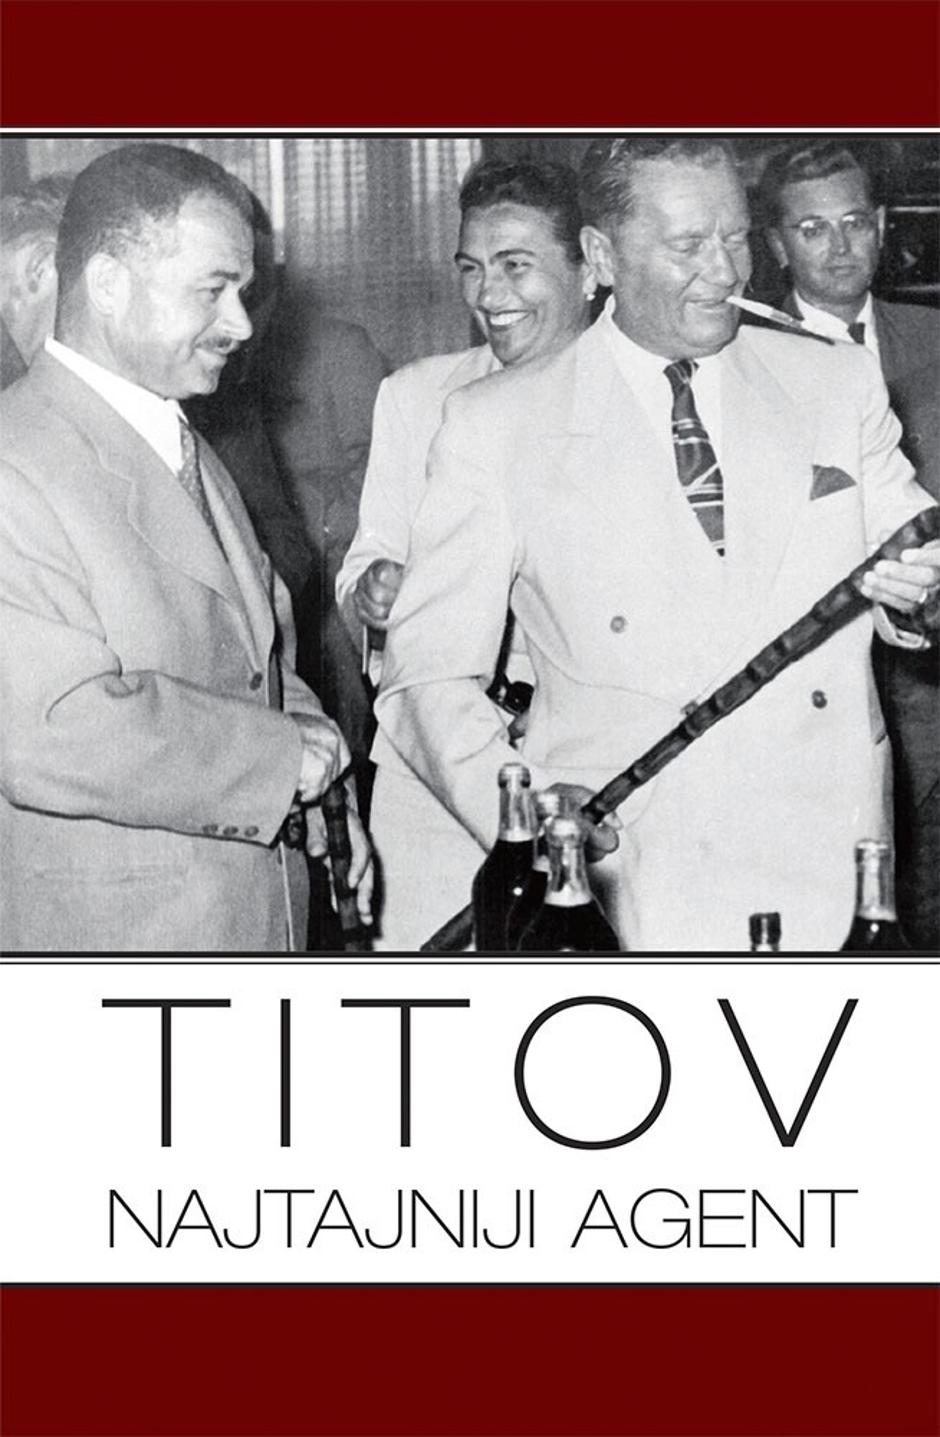 Titov najtajniji agent | Author: Express